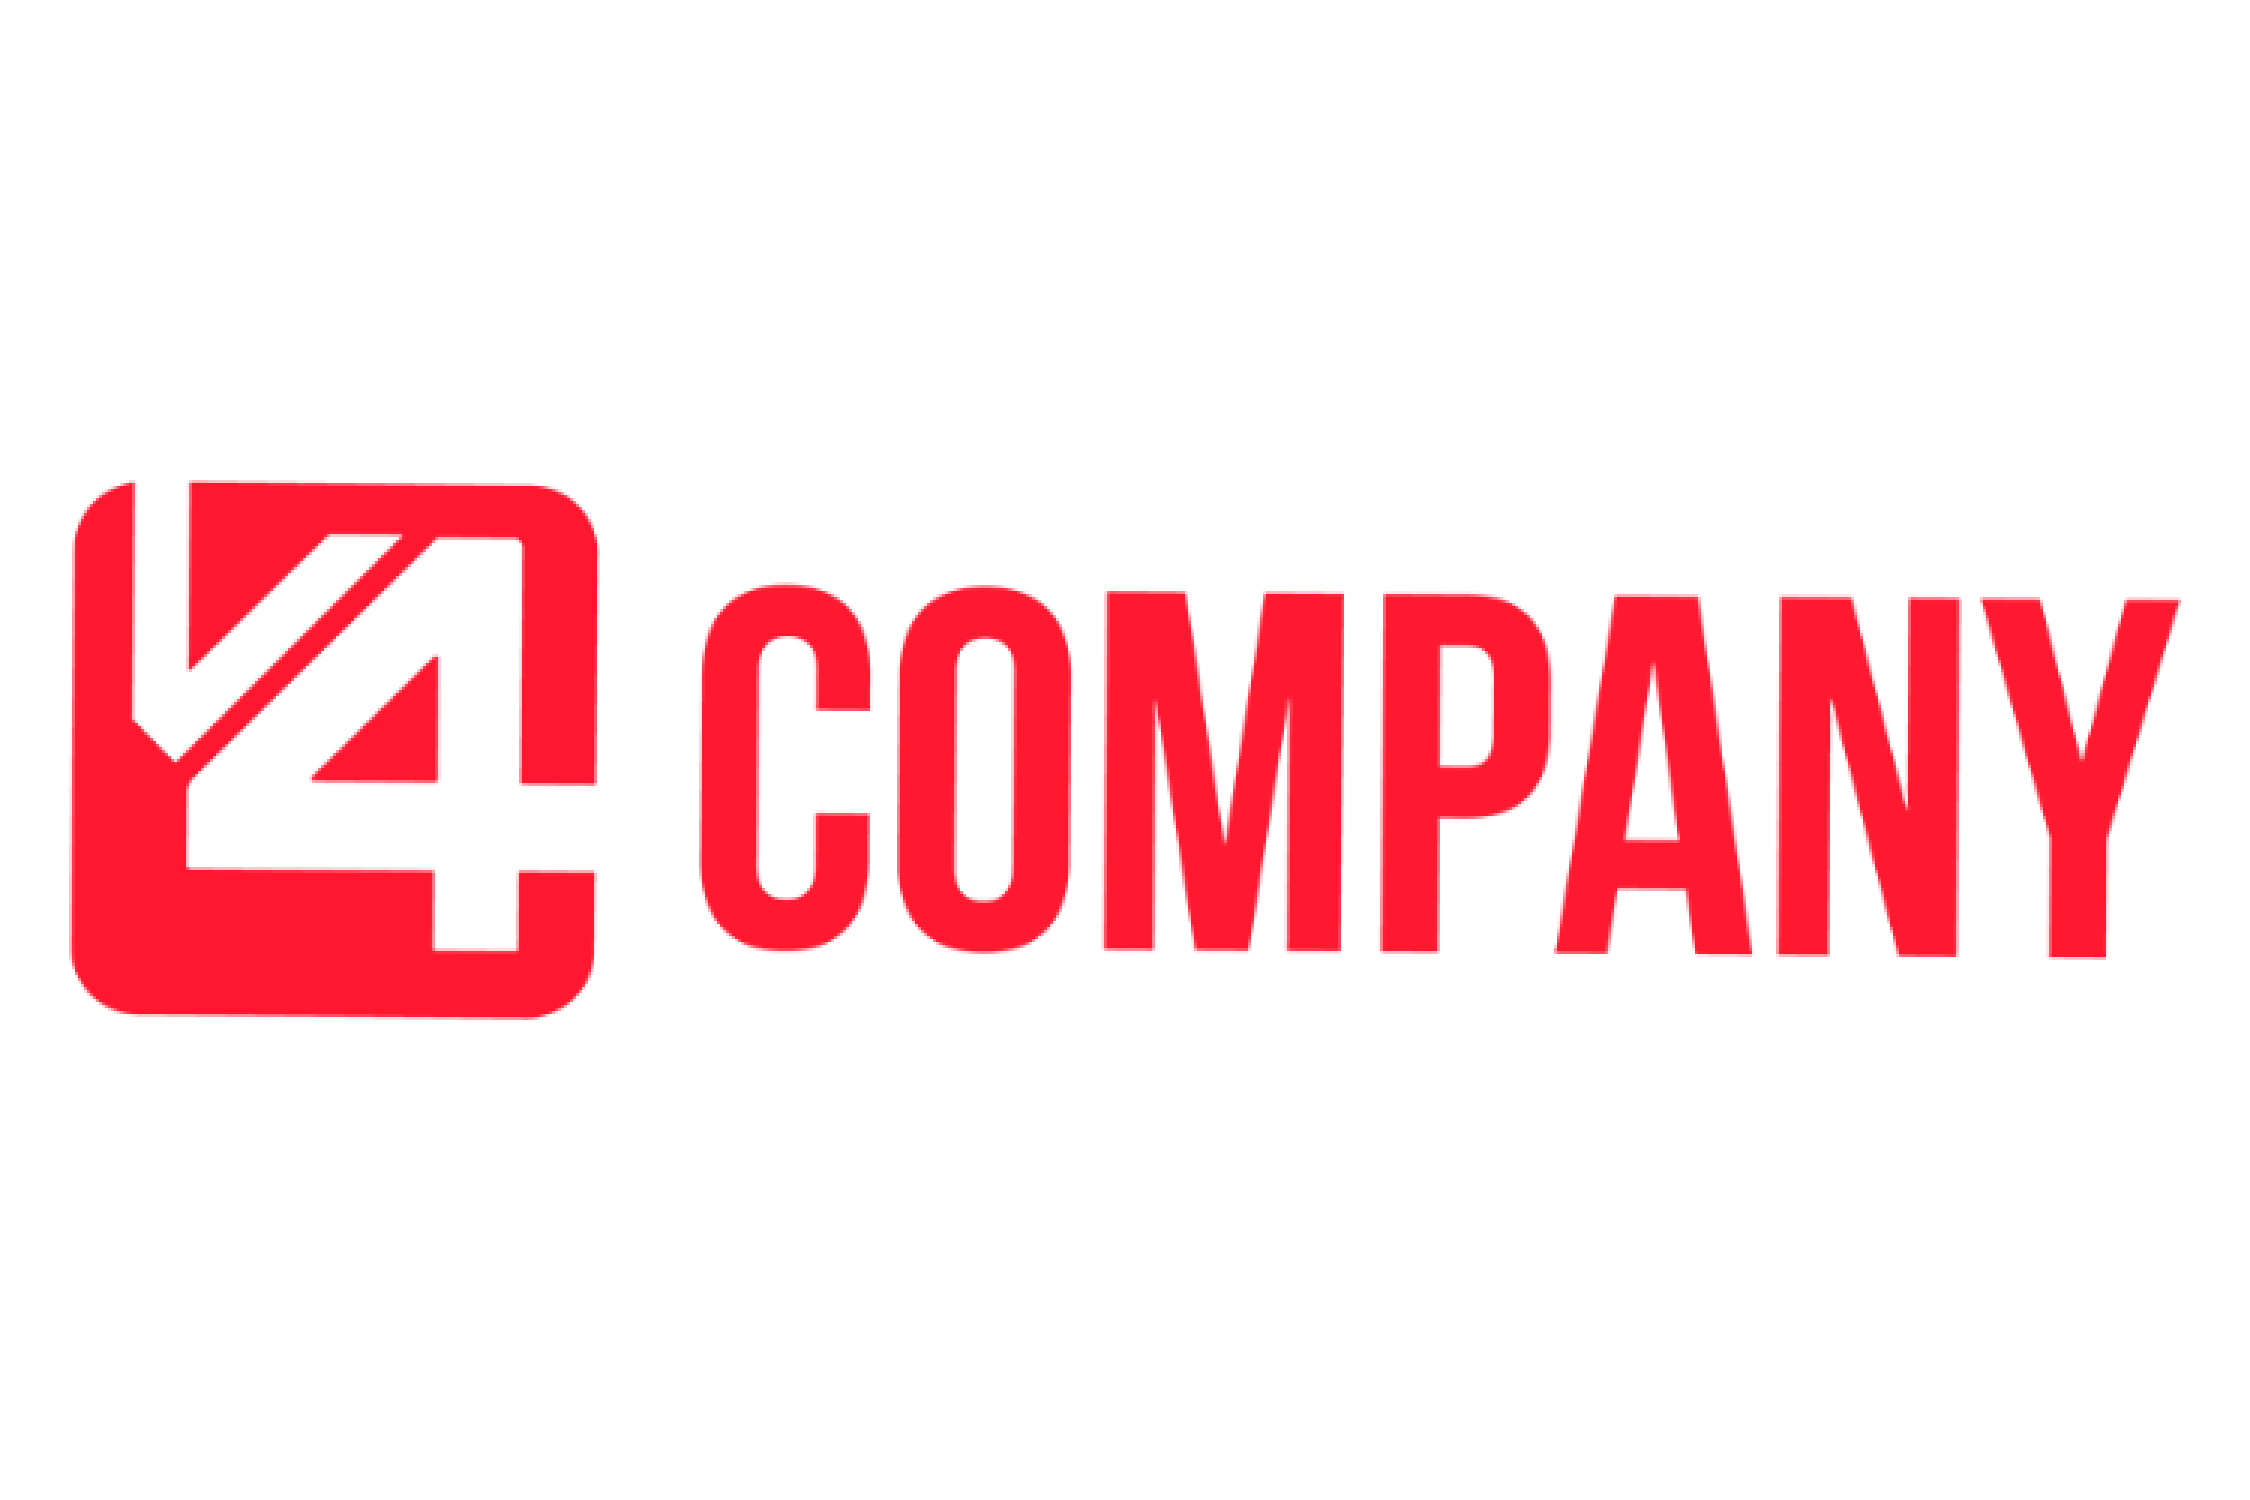 Logo 5 4. V Company. Логотип алк++Компани. Картинки lital Company.